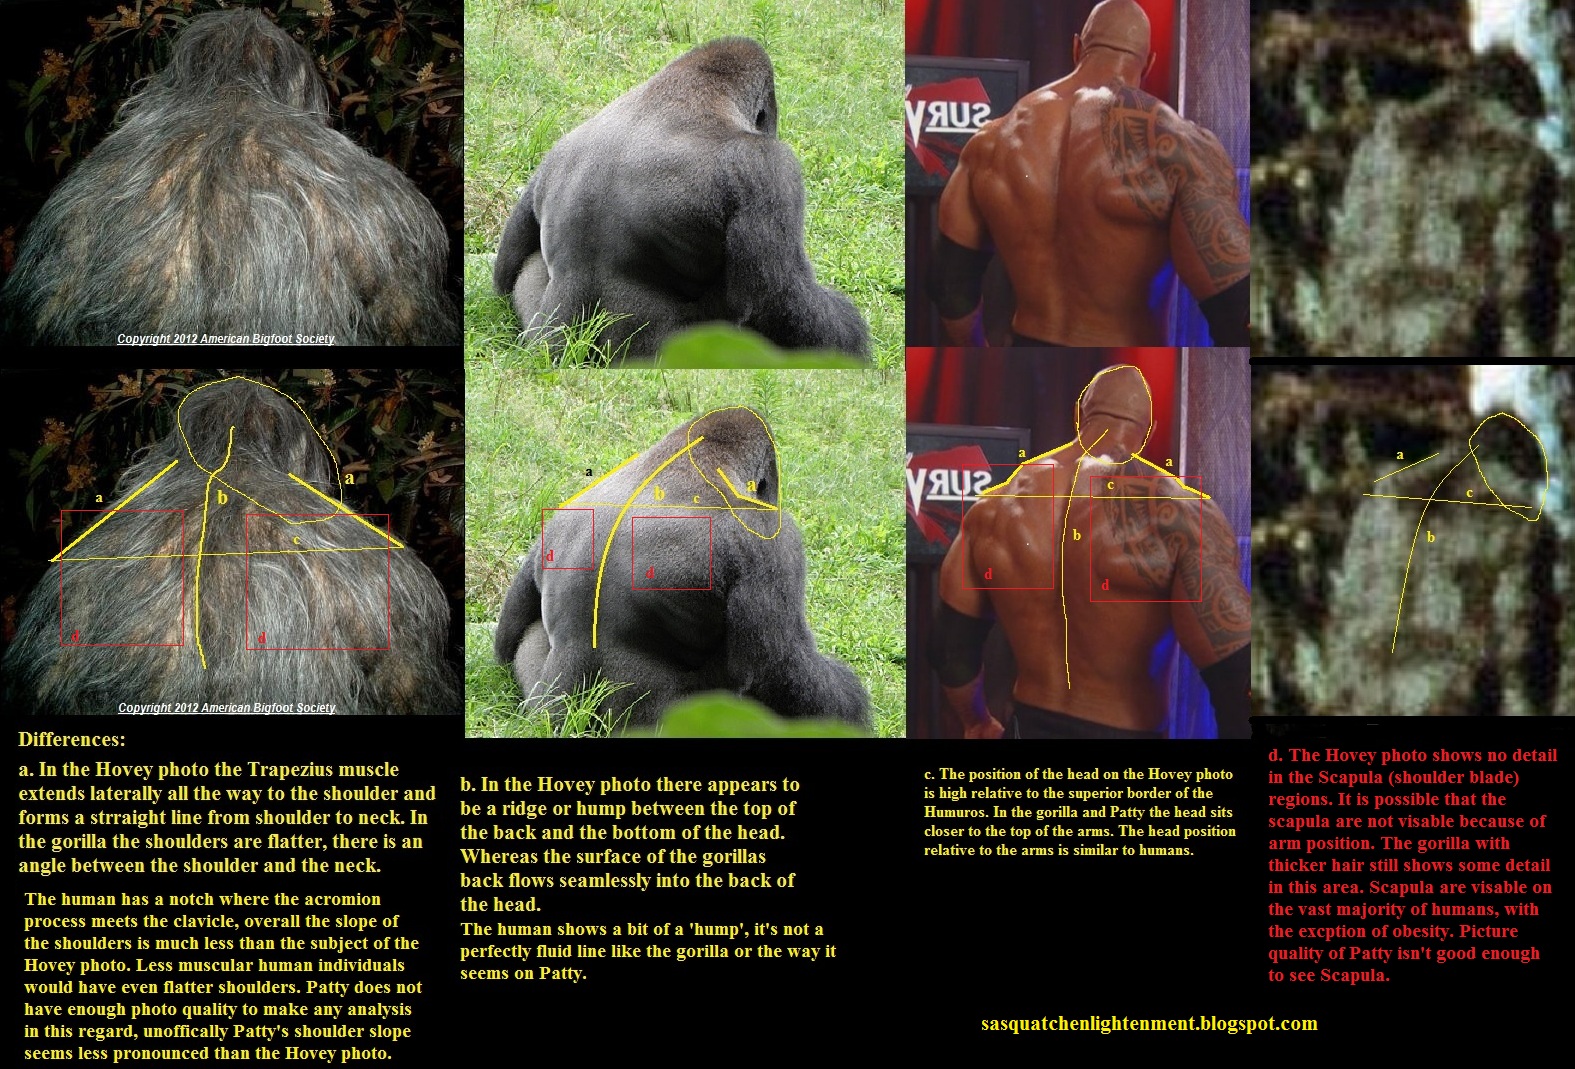 silverback vs gorilla grodd